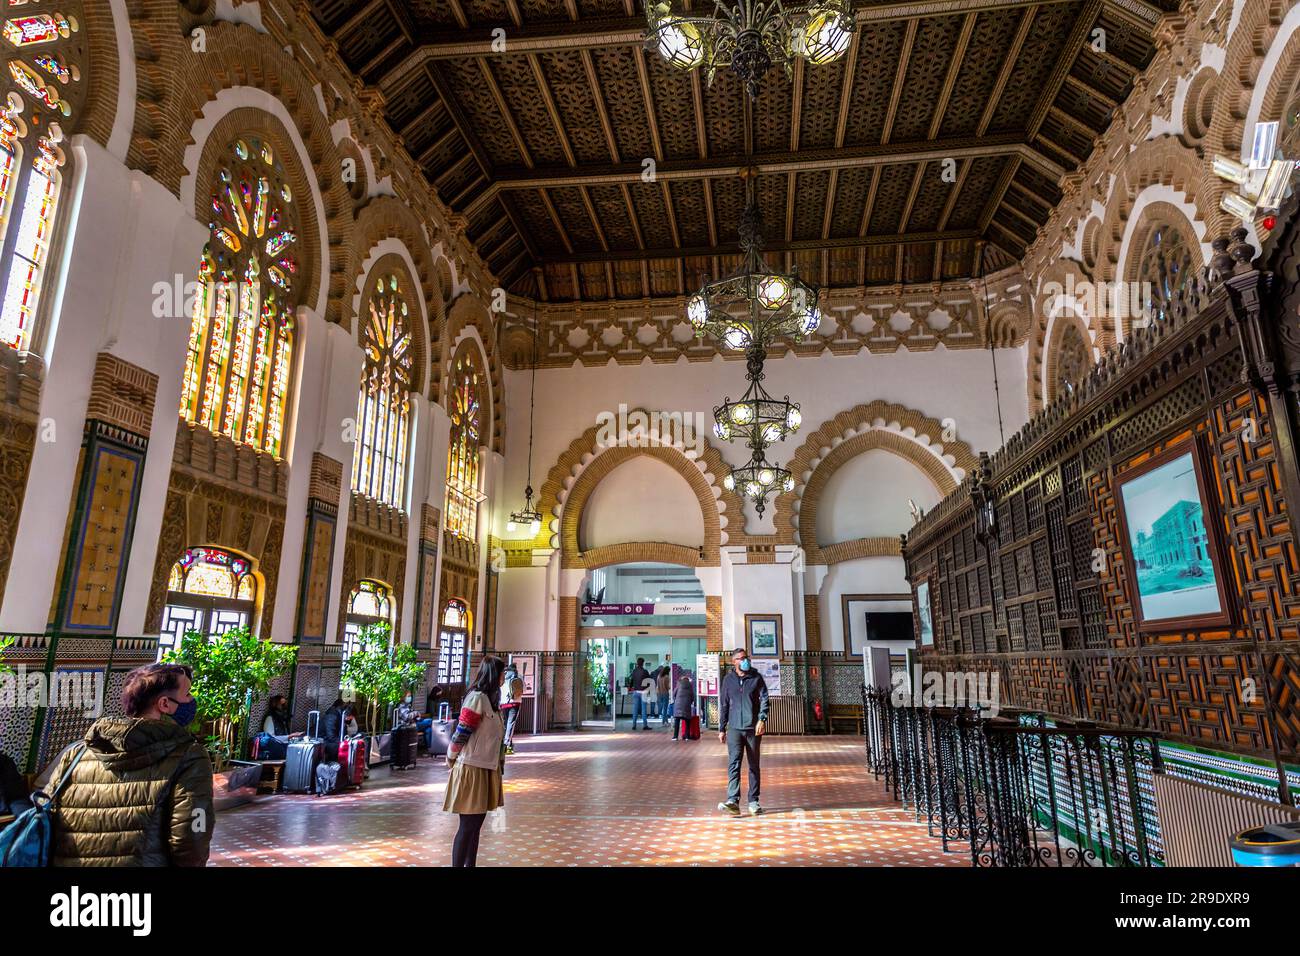 Toledo, Spagna - 17 febbraio 2022: Interno della stazione ferroviaria di Toledo con vetrate colorate e decorazioni in piastrelle islamiche. Progettato da Narciso Claveria y de Foto Stock